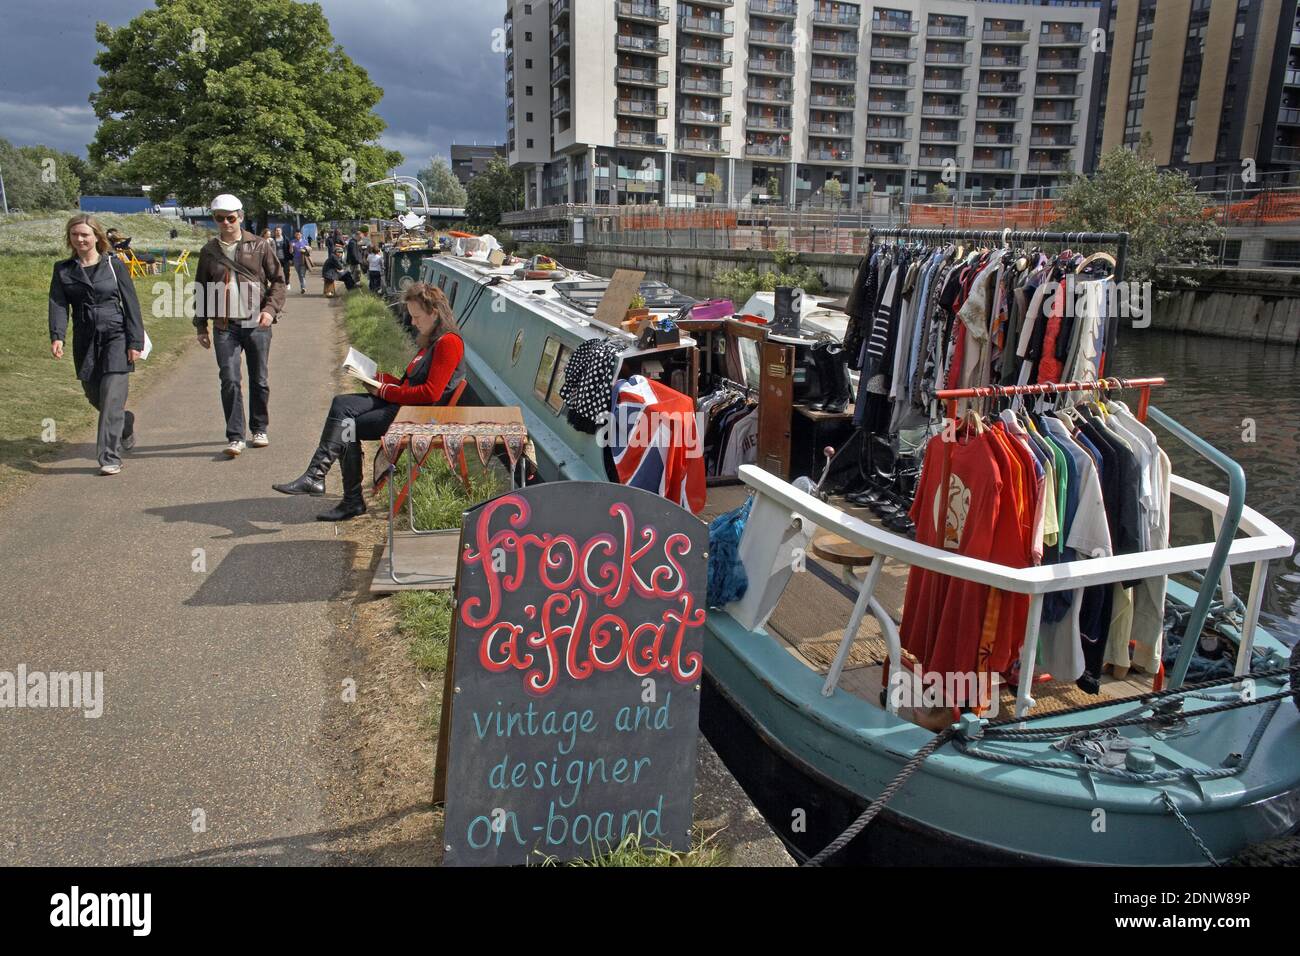 ANGLETERRE / Londres / est de Londres /personnes avec un bateau étroit vendant des vêtements et des livres vintage créant 'un nouveau East End Amsterdam. Banque D'Images